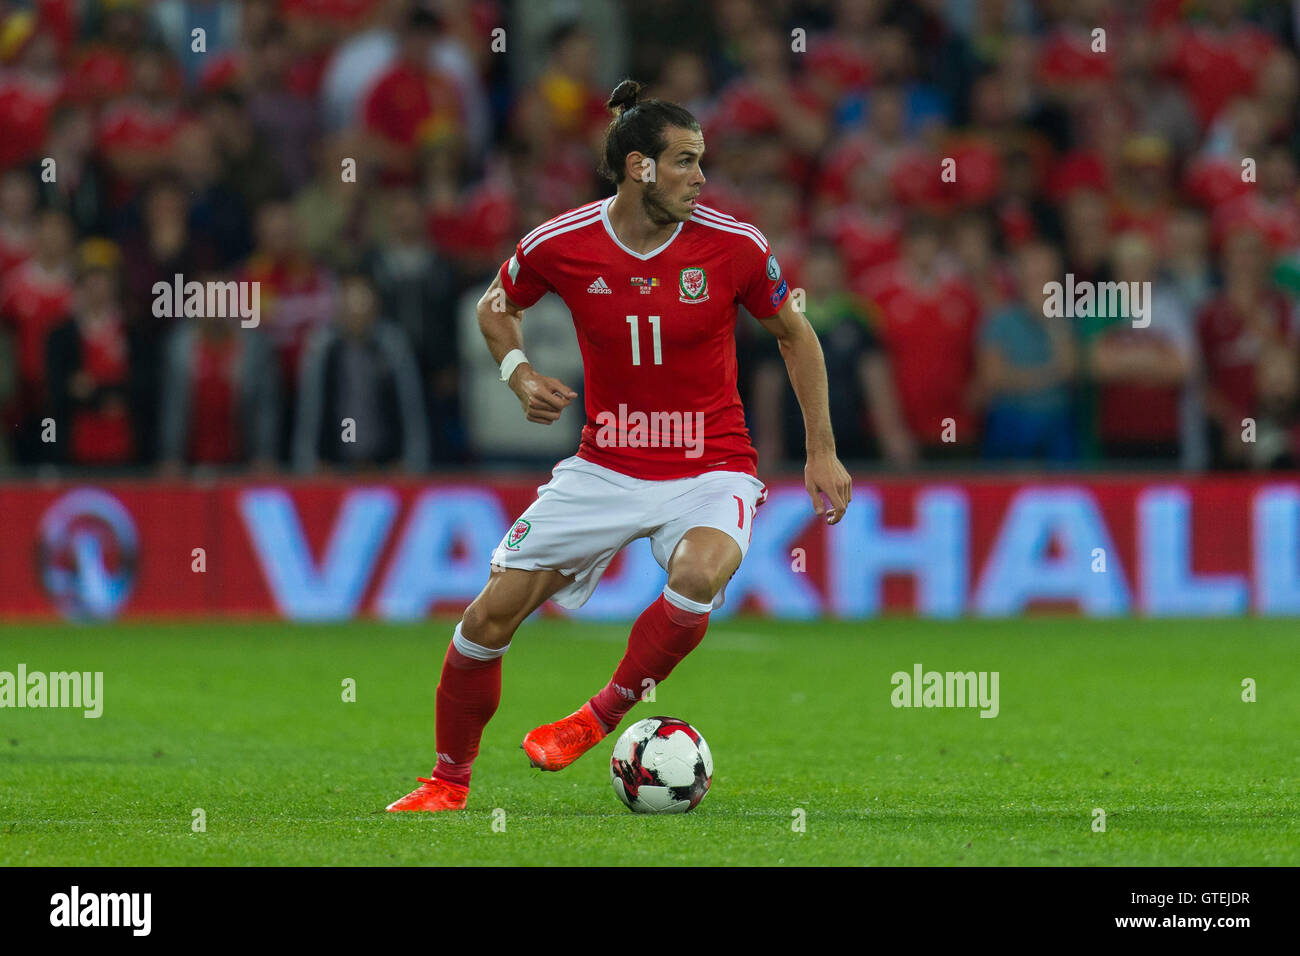 Footballeur gallois Gareth Bale en action pour l'équipe de football du Pays de Galles. Banque D'Images